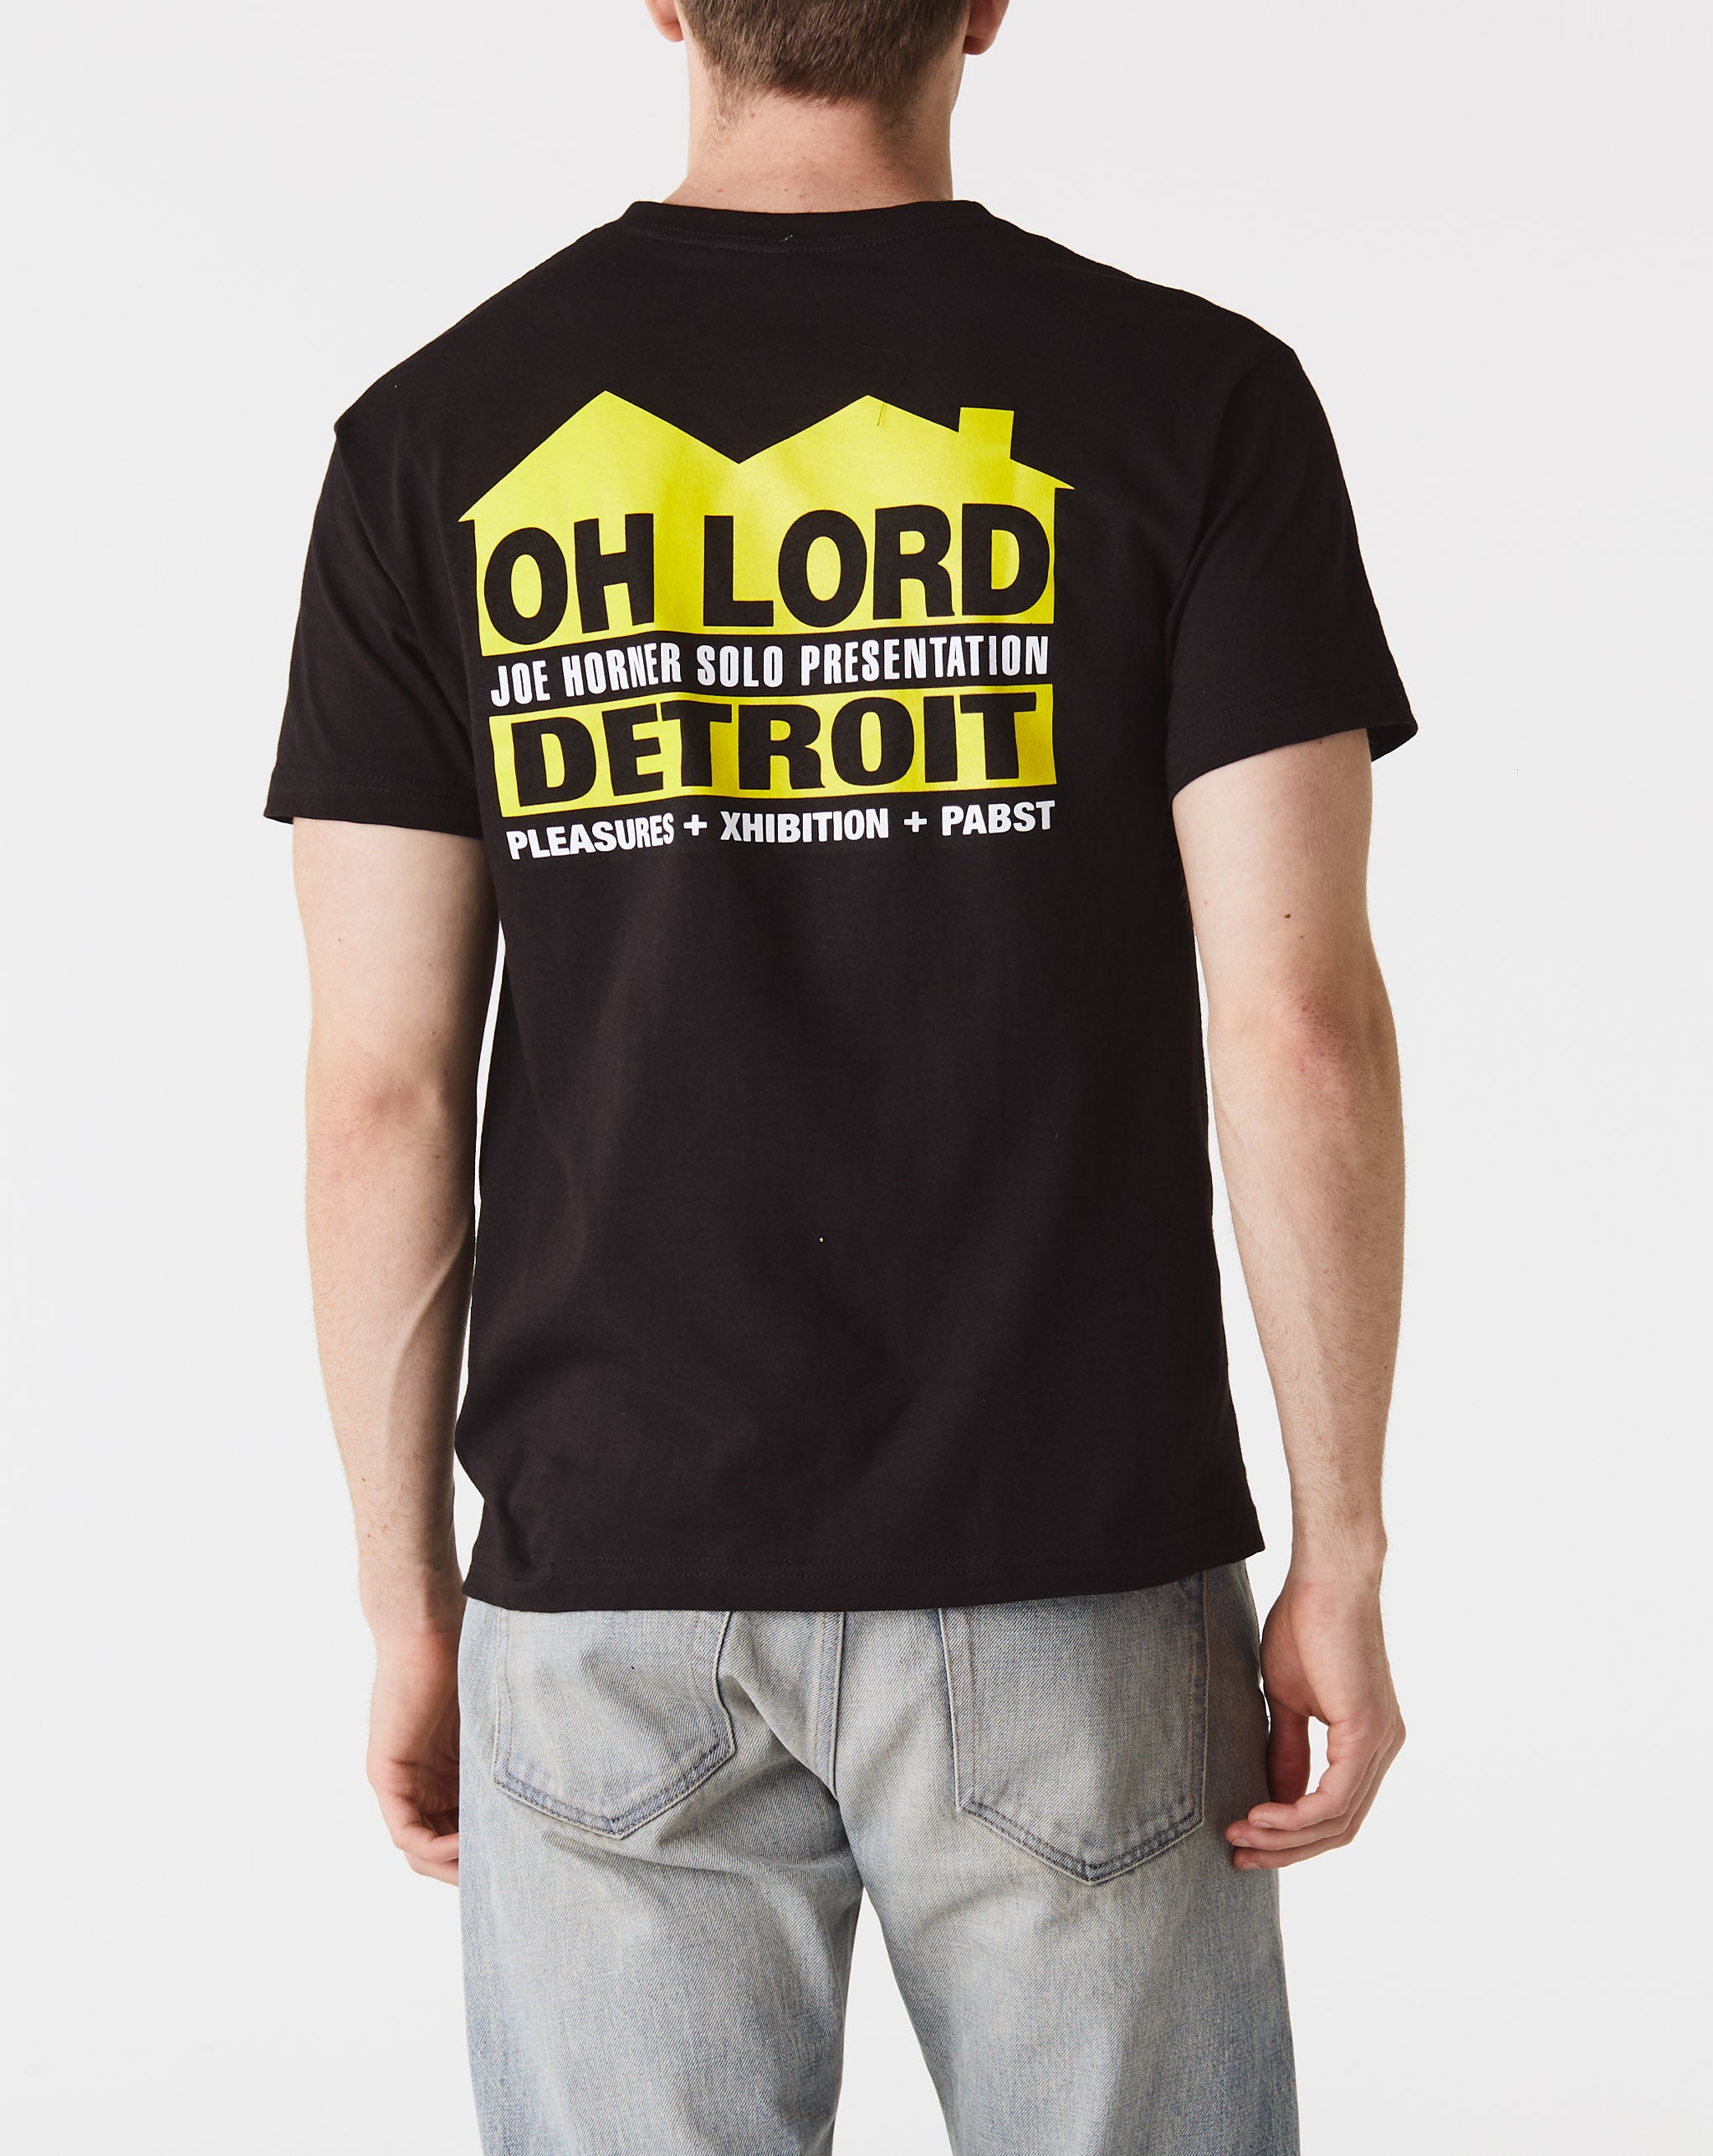 Joe Horner 'Oh Lord' House Sign T-shirt Cat  - Cheap Urlfreeze Jordan outlet